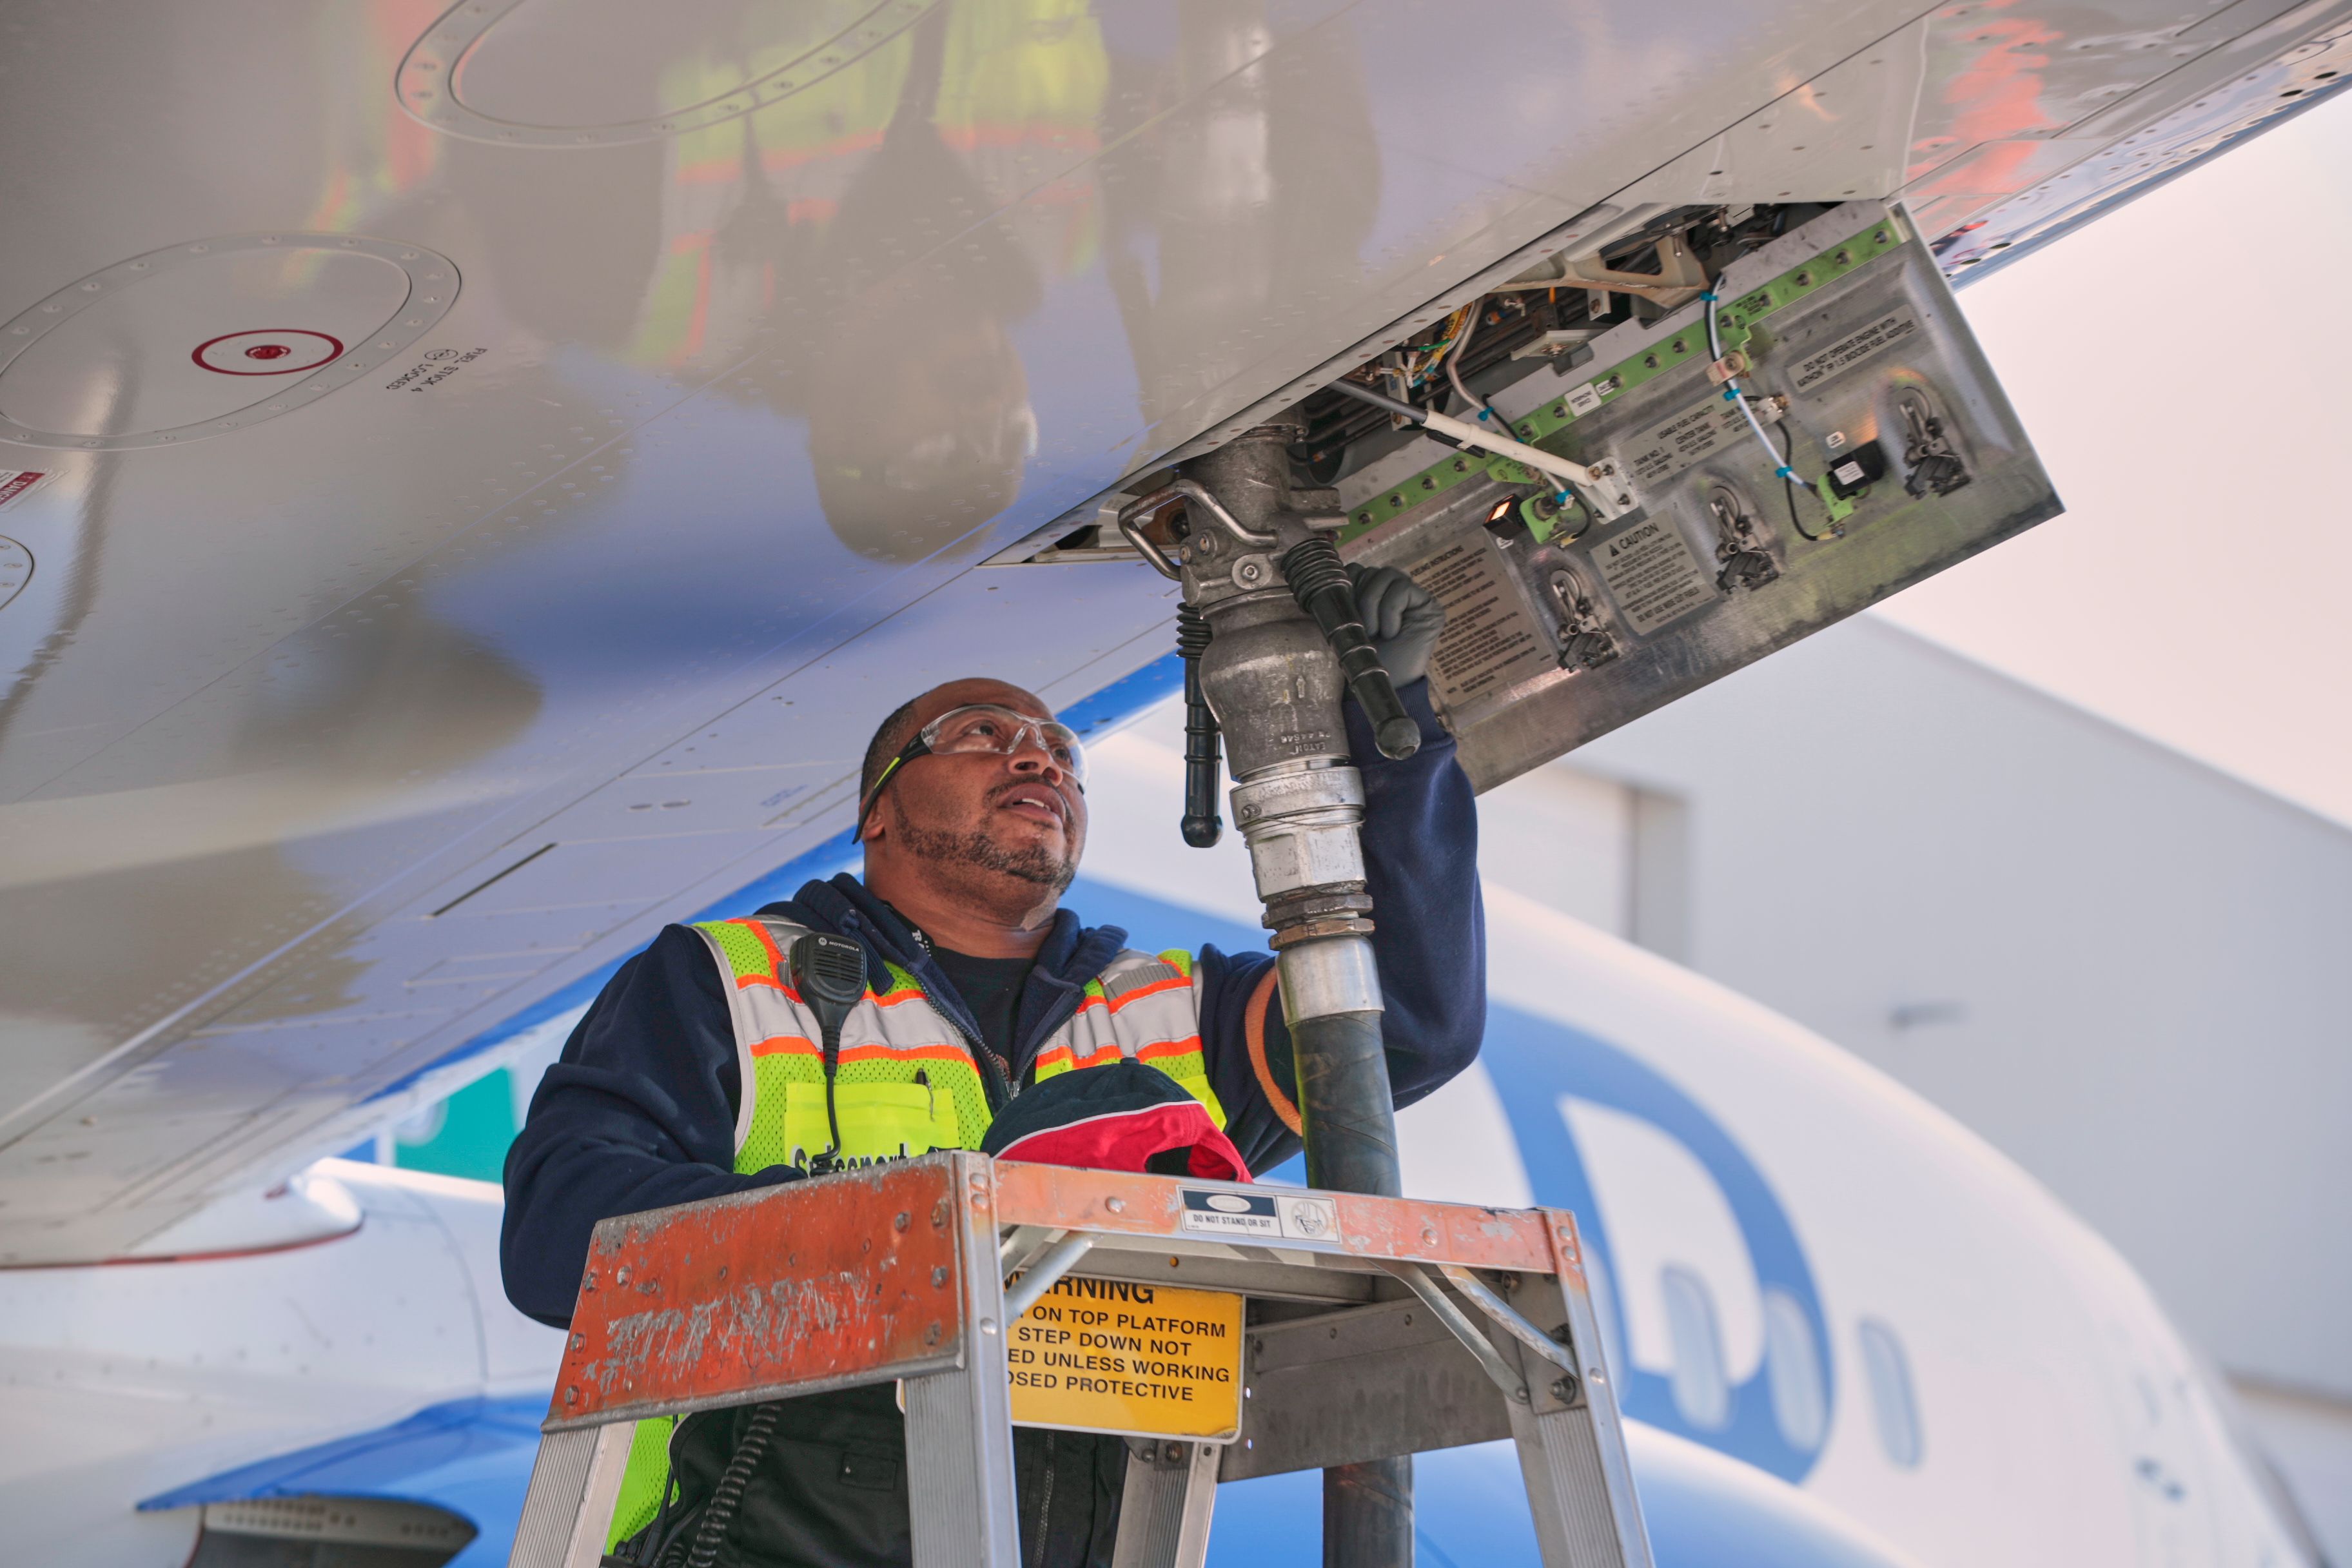 A ground crew worker refueling an aircraft.